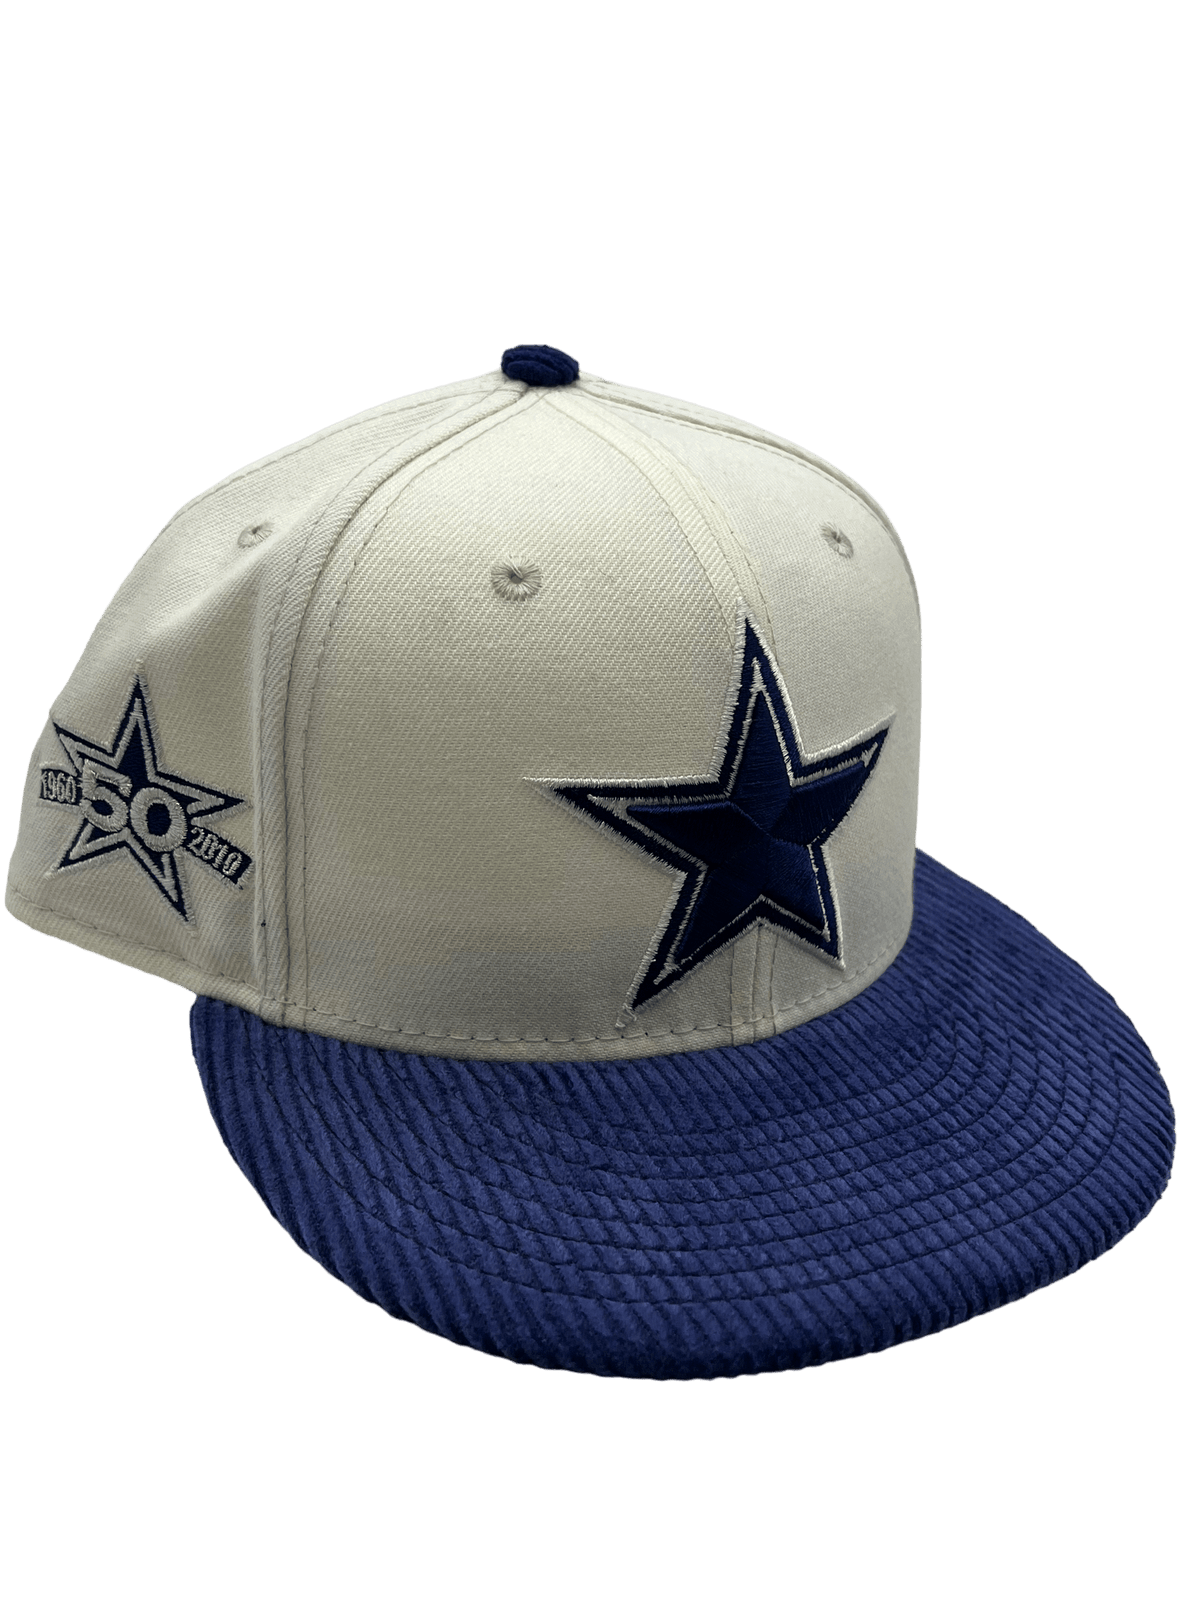 Dallas Cowboys New Era Custom Corduroy Brim Cream 59FIFTY